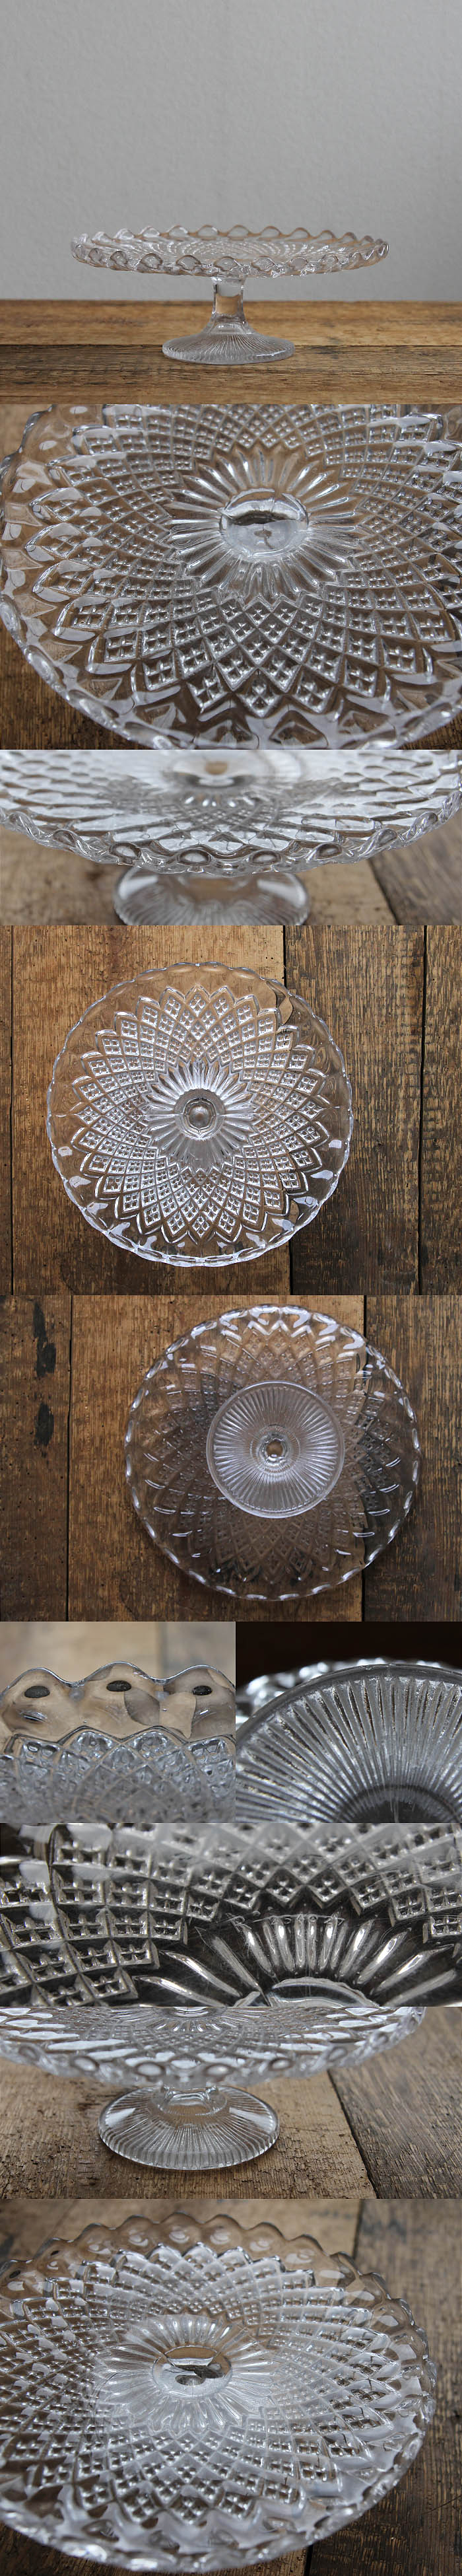 イギリス アンティーク ガラスケーキスタンド コンポート皿 食器 インテリア雑貨「プレスガラス」P-022